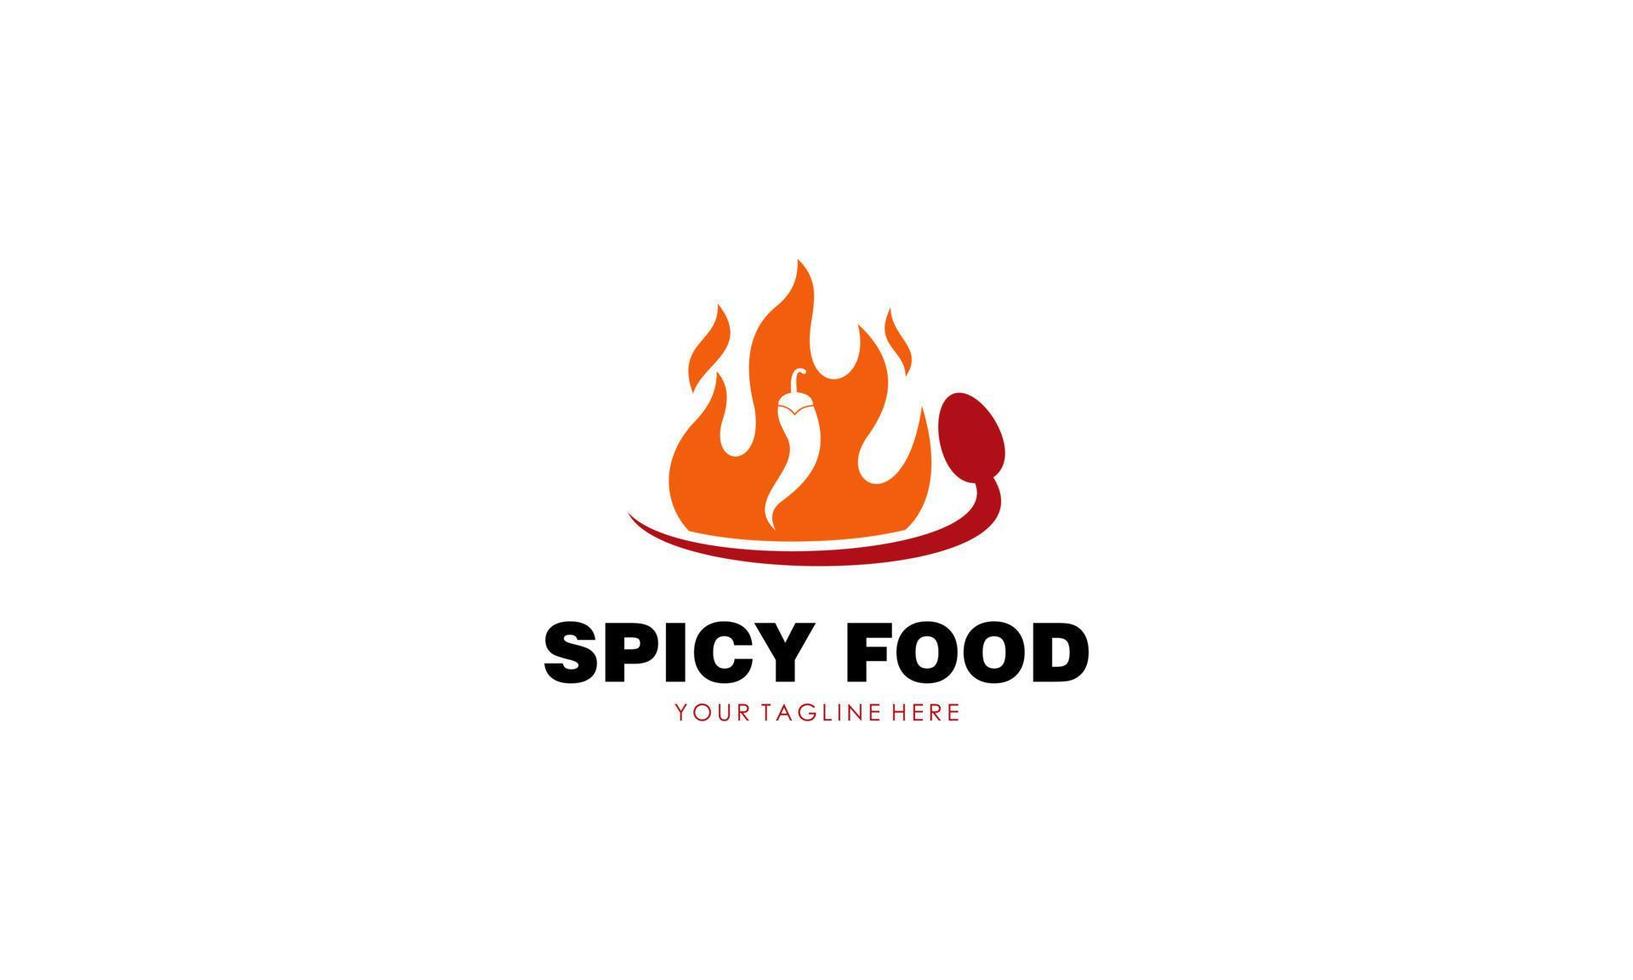 Spicy food logo design vector